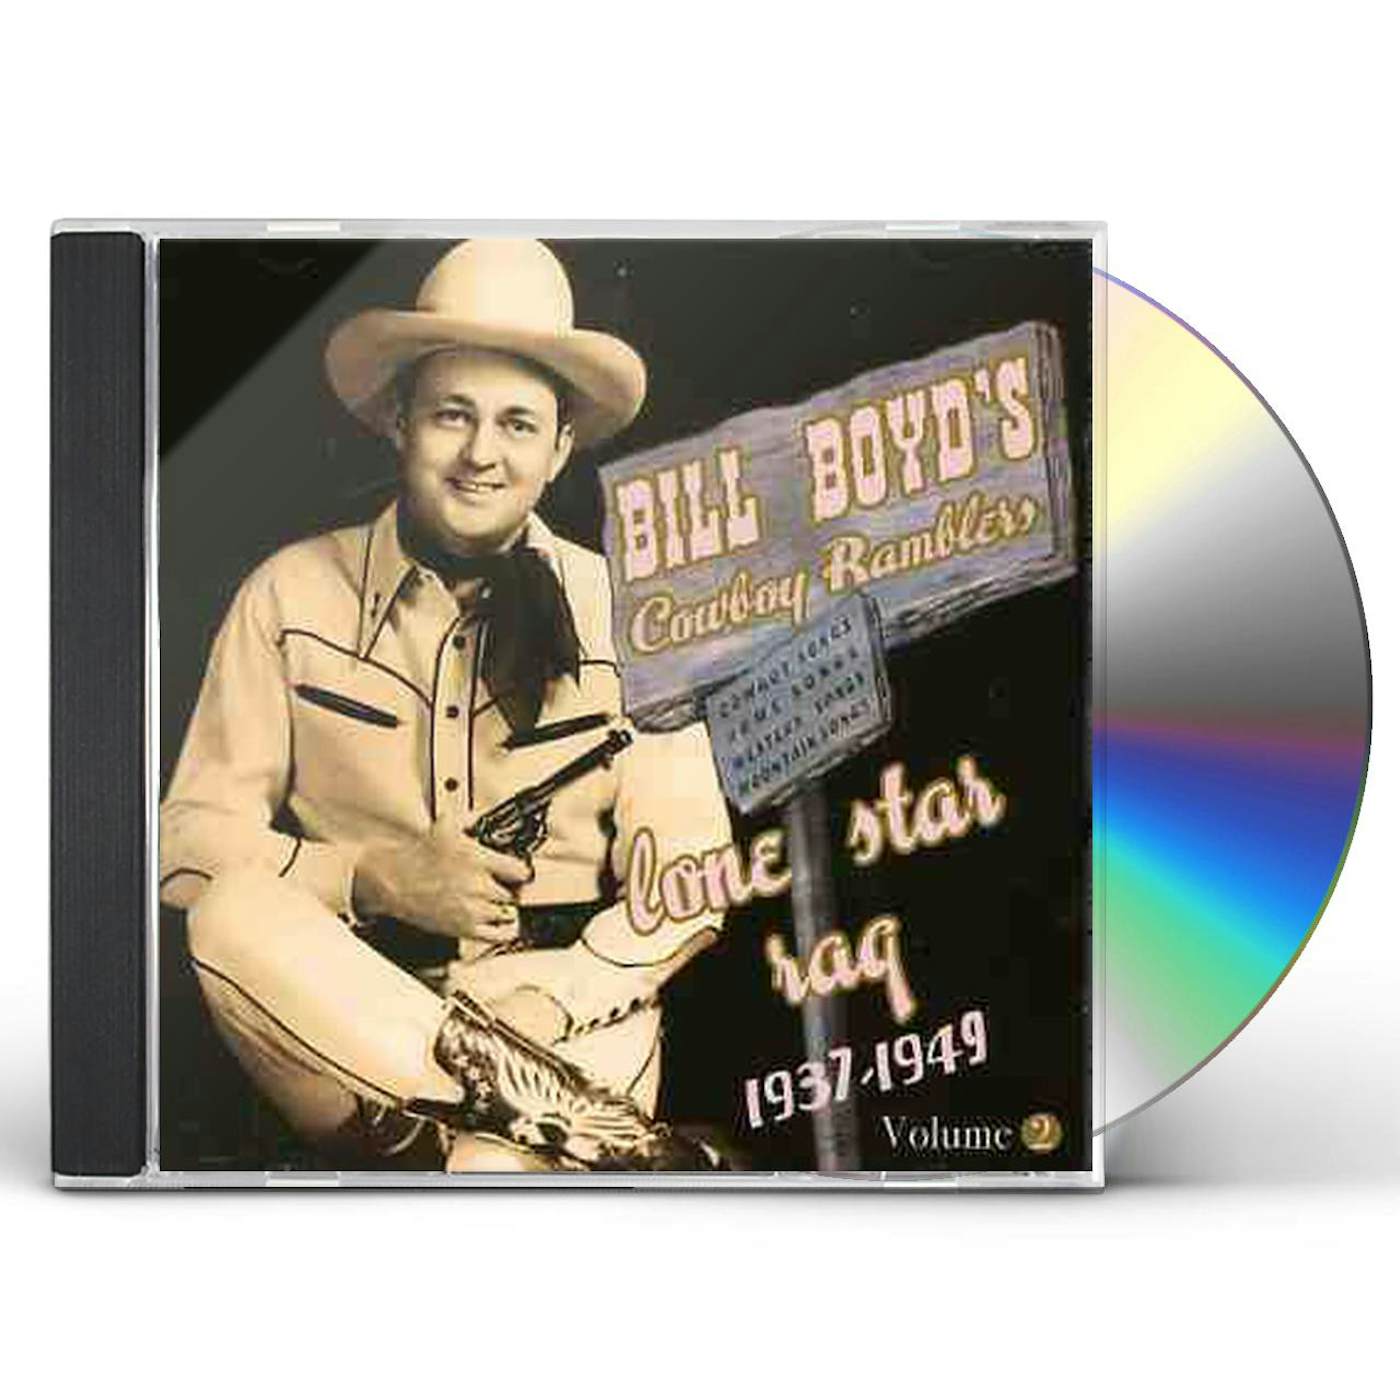 Bill Boyd LONE STAR RAG: 1937-1949 2 CD